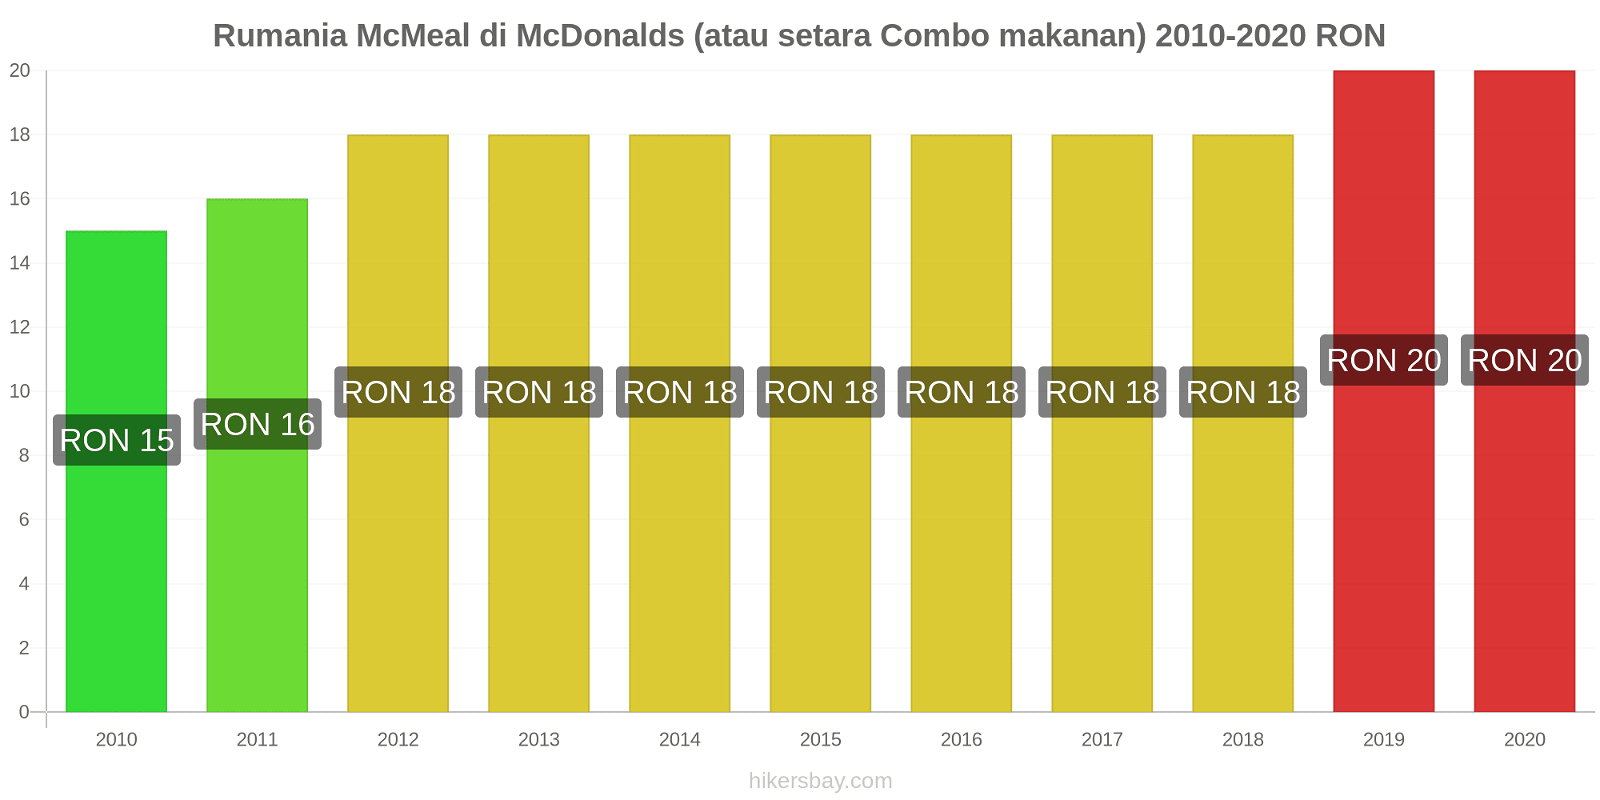 Rumania perubahan harga McMeal di McDonalds (atau setara Combo makanan) hikersbay.com